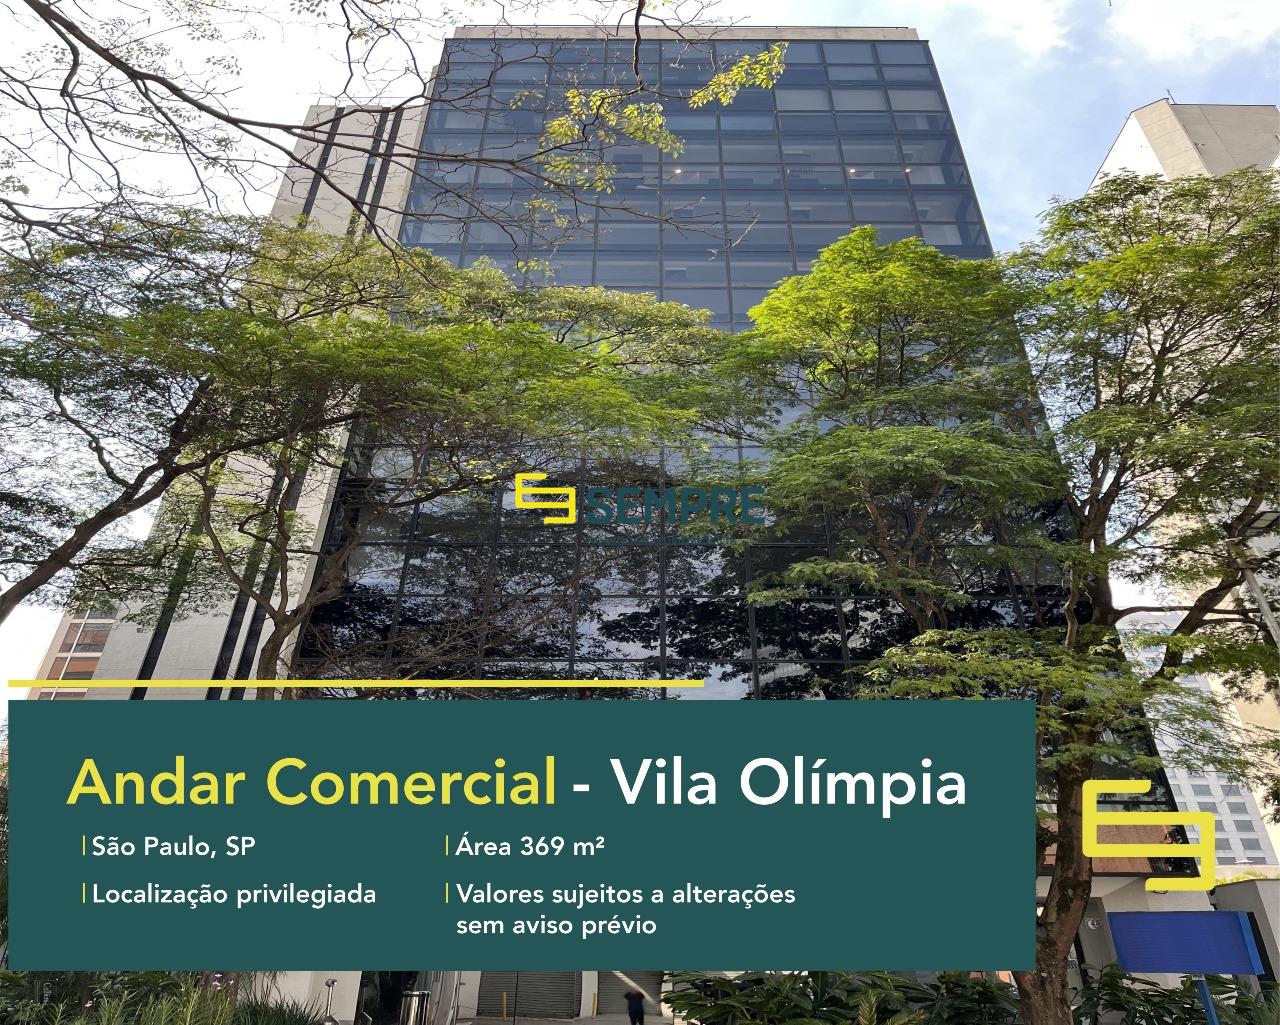 Laje corporativa no Vila Olímpia para locação em São Paulo, excelente localização. O estabelecimento empresarial conta com área de 369,12 m².